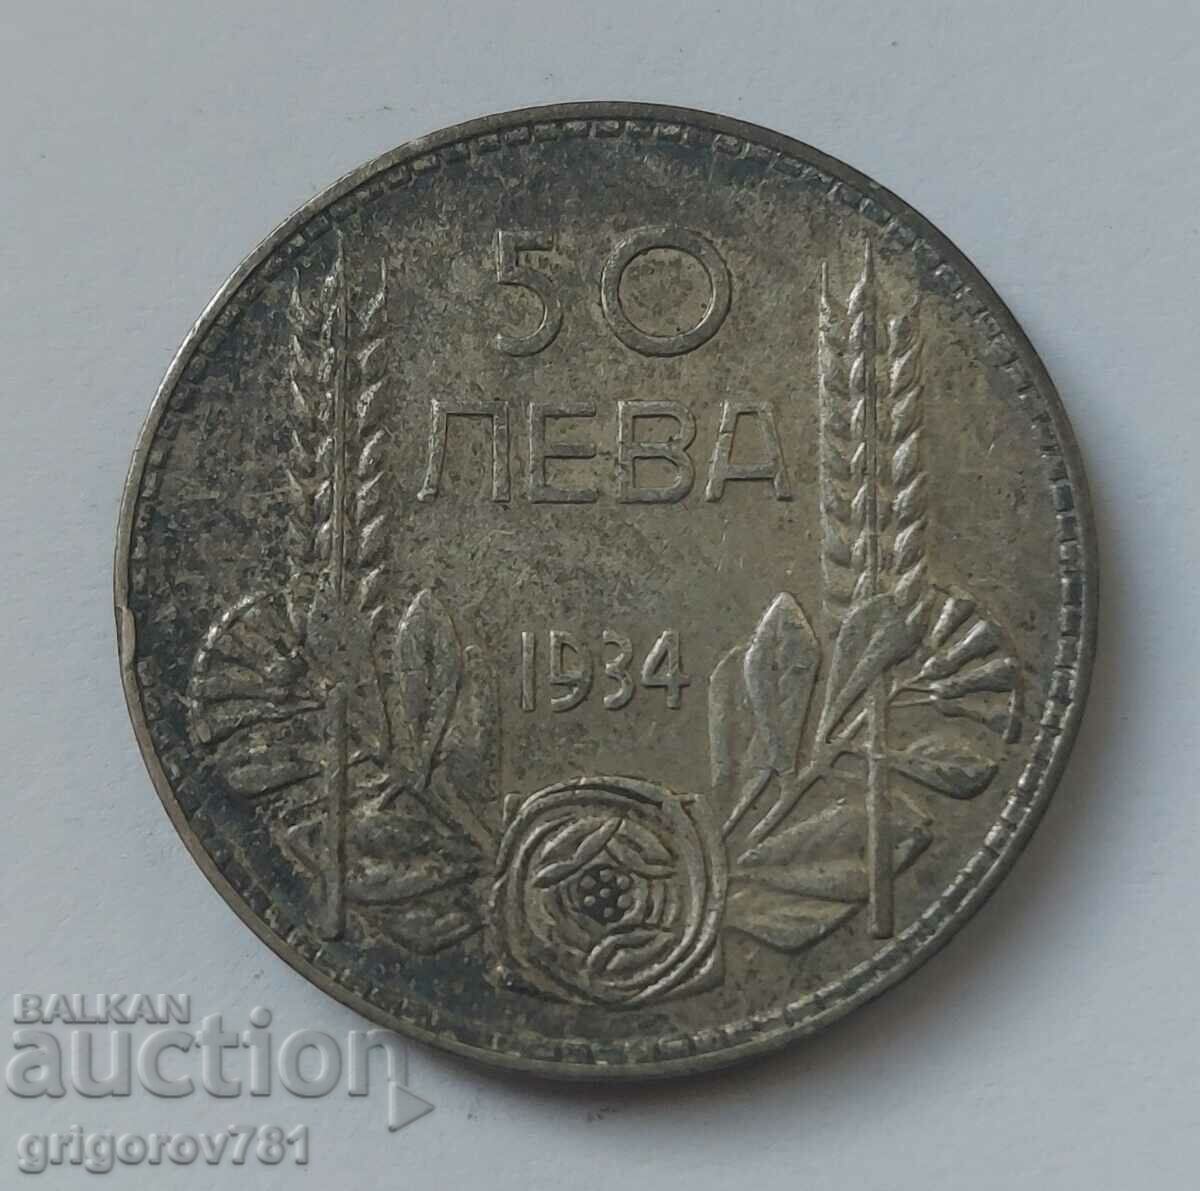 Ασήμι 50 λέβα Βουλγαρία 1934 - ασημένιο νόμισμα #26